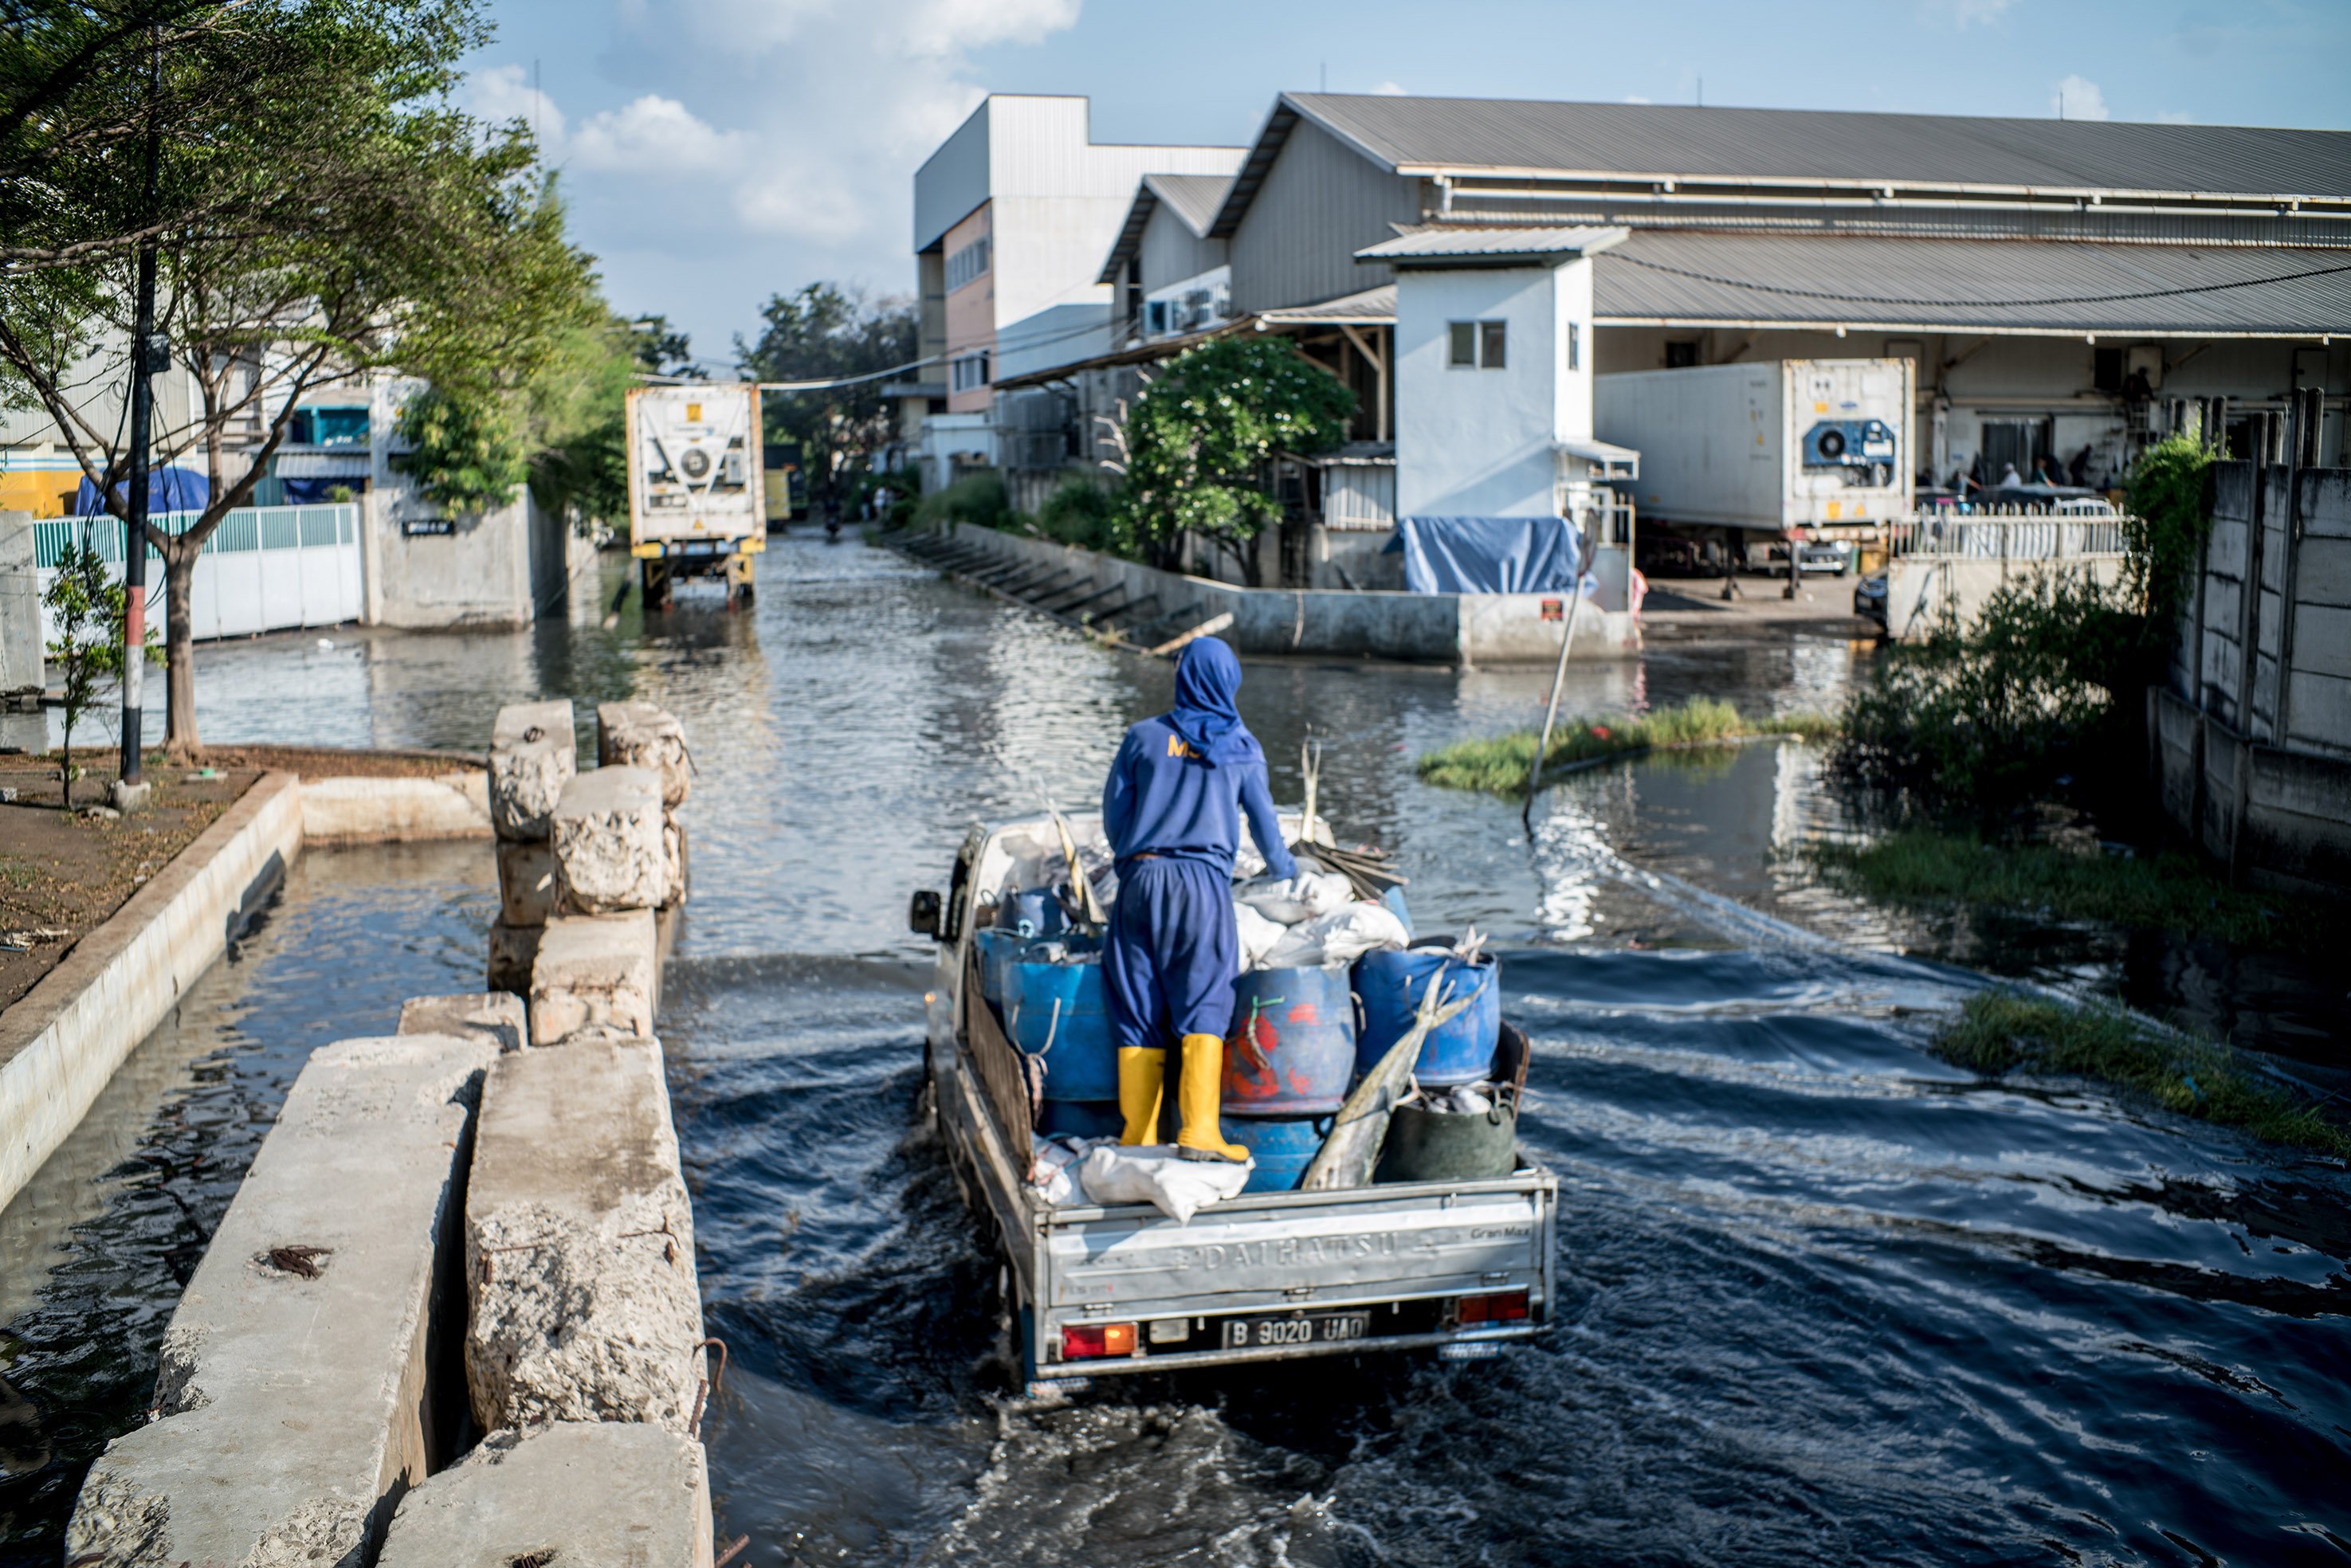 Sejumlah warga melintas di jalan raya Muara Baru yang tergenang banjir rob di Kawasan Muara Baru, Jakarta Utara, Kamis, (27/5/2021). Banjir rob ini terjadi usai fenomena gerhana bulan total atau Super Blood Moon yang berpengaruh terhadap tingginya pasang air laut. Banjir rob ini telah mengenangi jalan dengan ketinggian genangan sekitar 10 centimeter. Meski dilanda banjir rob aktivitas pelabuhan masih tetap berjalan seperti biasa. Potensi banjir rob akibat air pasang di pesisir Jakarta terjadi sepanjang 28